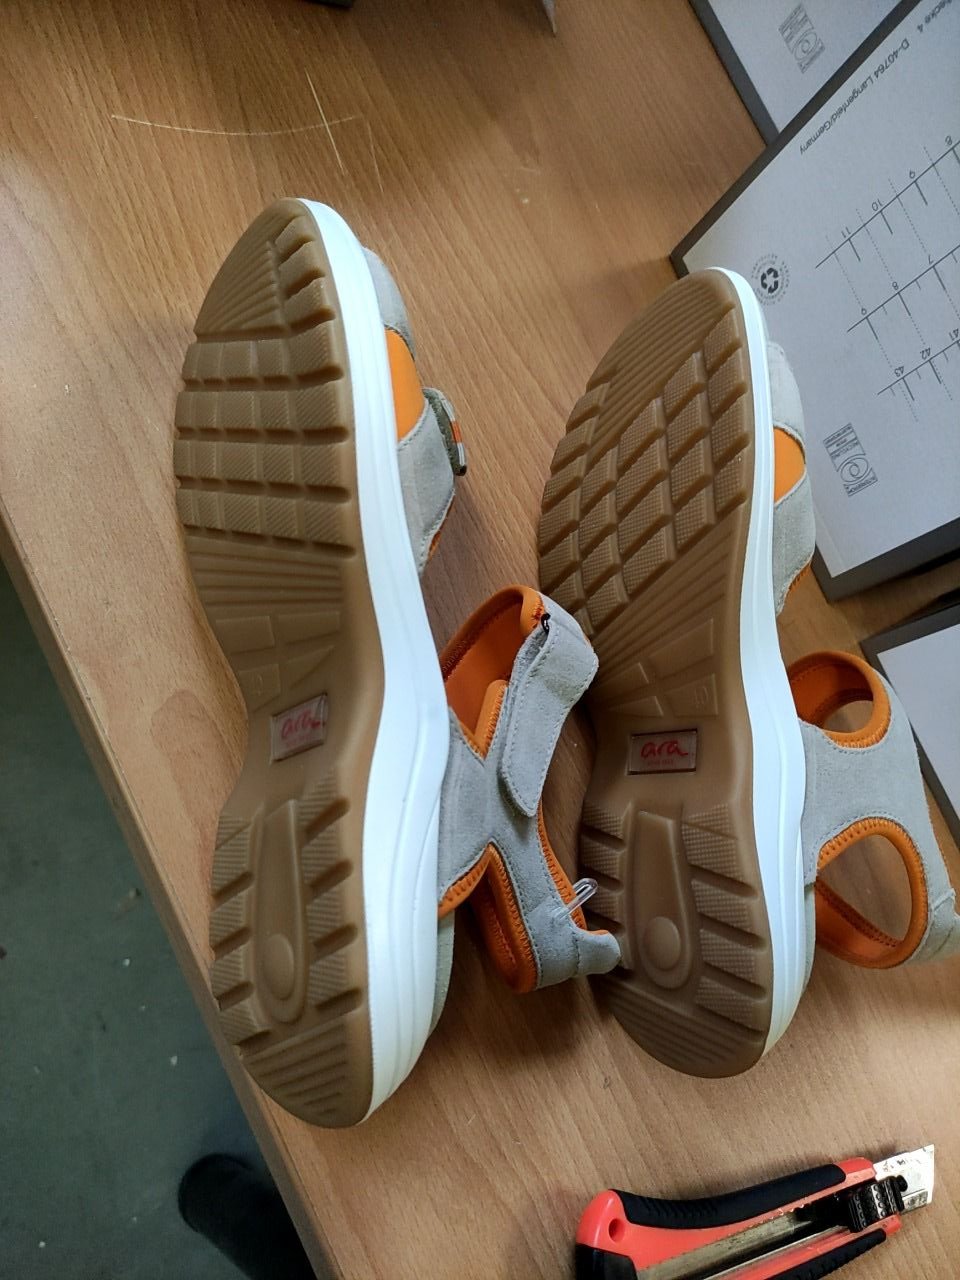 Sportovní obuv pro ženy - lehké kožené sandále Ara vel. 40